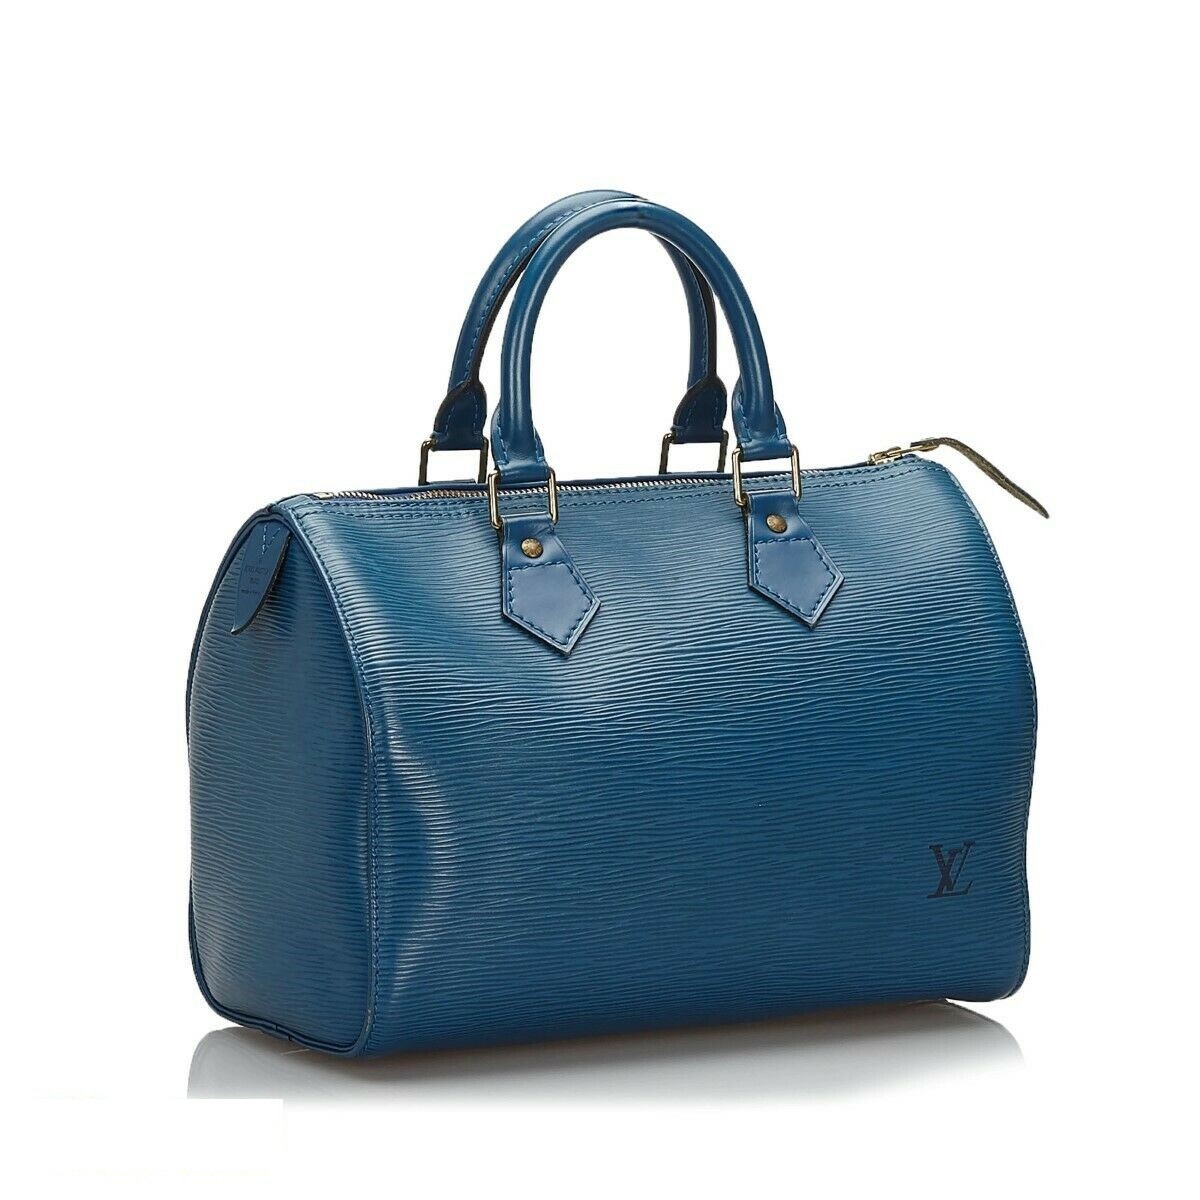 Louis Vuitton Speedy 30 Epi Leather Blue Boston Handbag Very Good ...